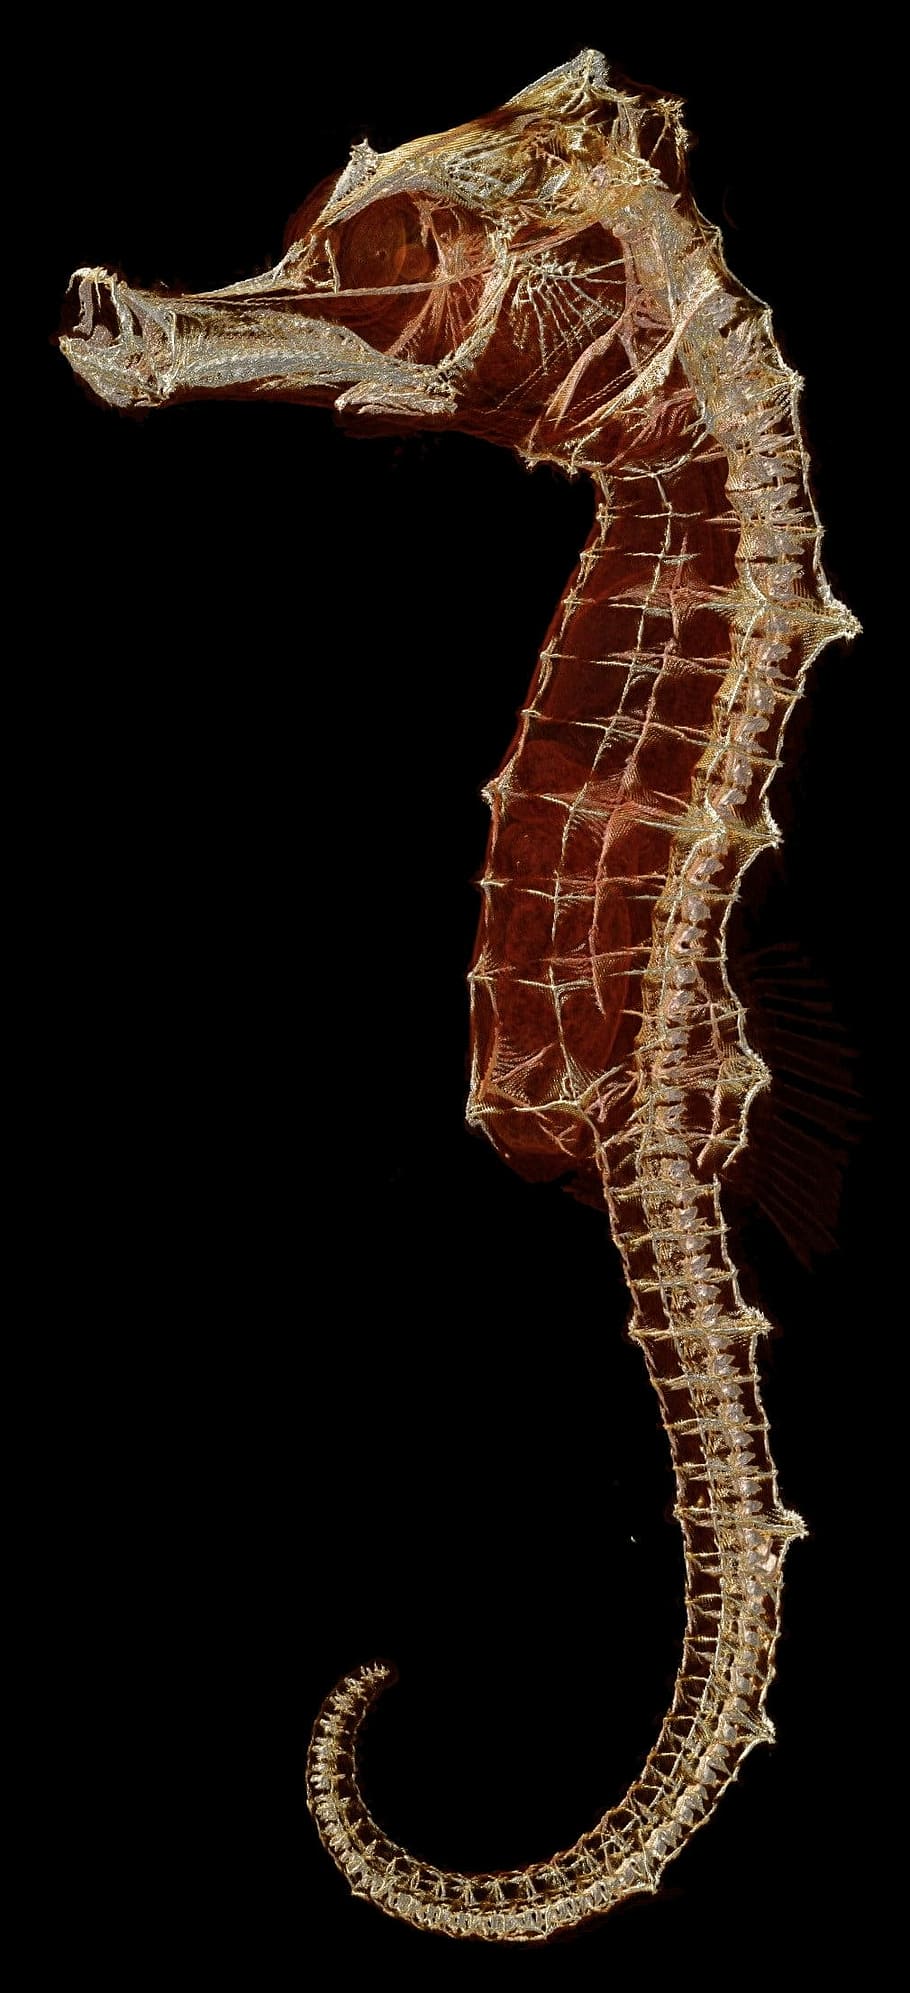 タツノオトシゴのイラスト タツノオトシゴ スケルトン 生物学 魚 動物 動物のテーマ 一匹 動物の野生動物 スタジオ撮影 Pxfuel